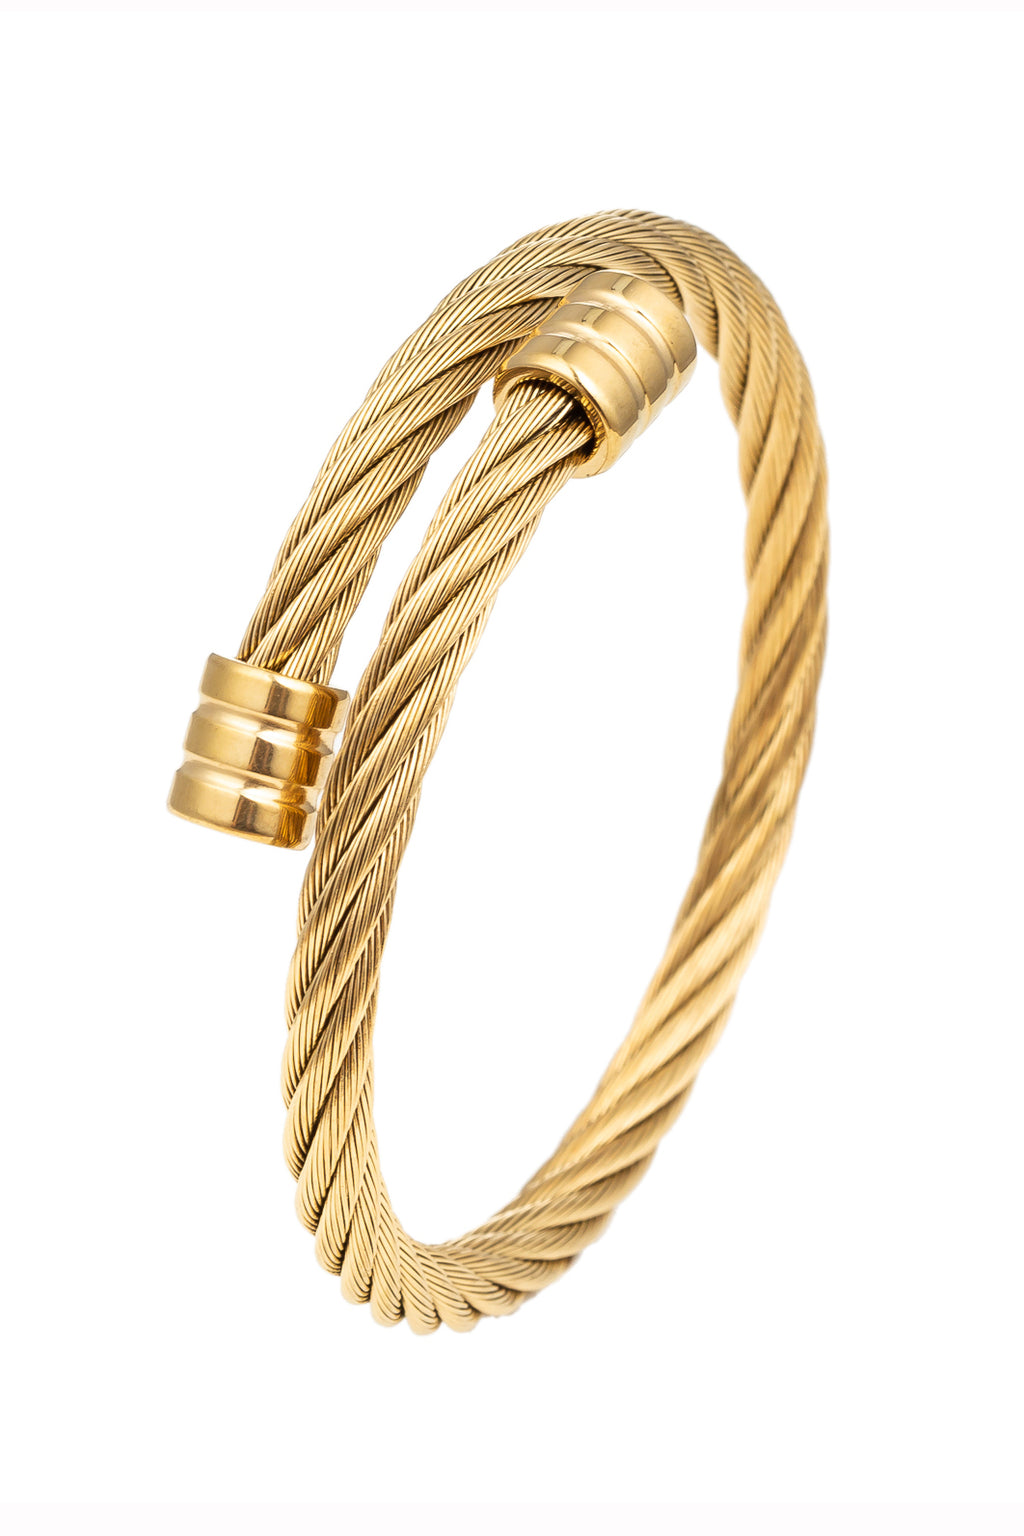 Gold tone titanium wrap coil bracelet.